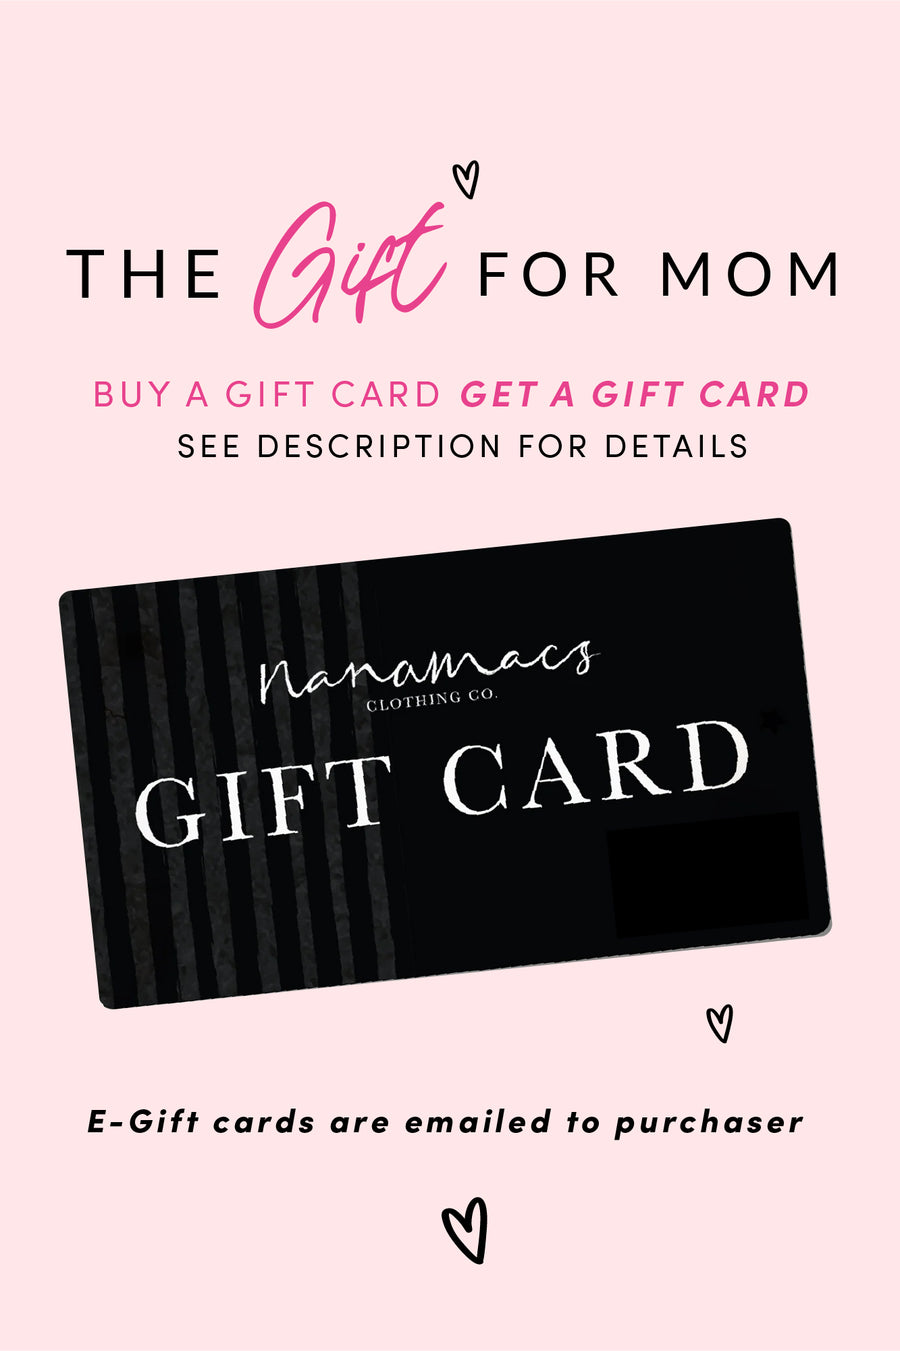 NanaMacs Gift Cards